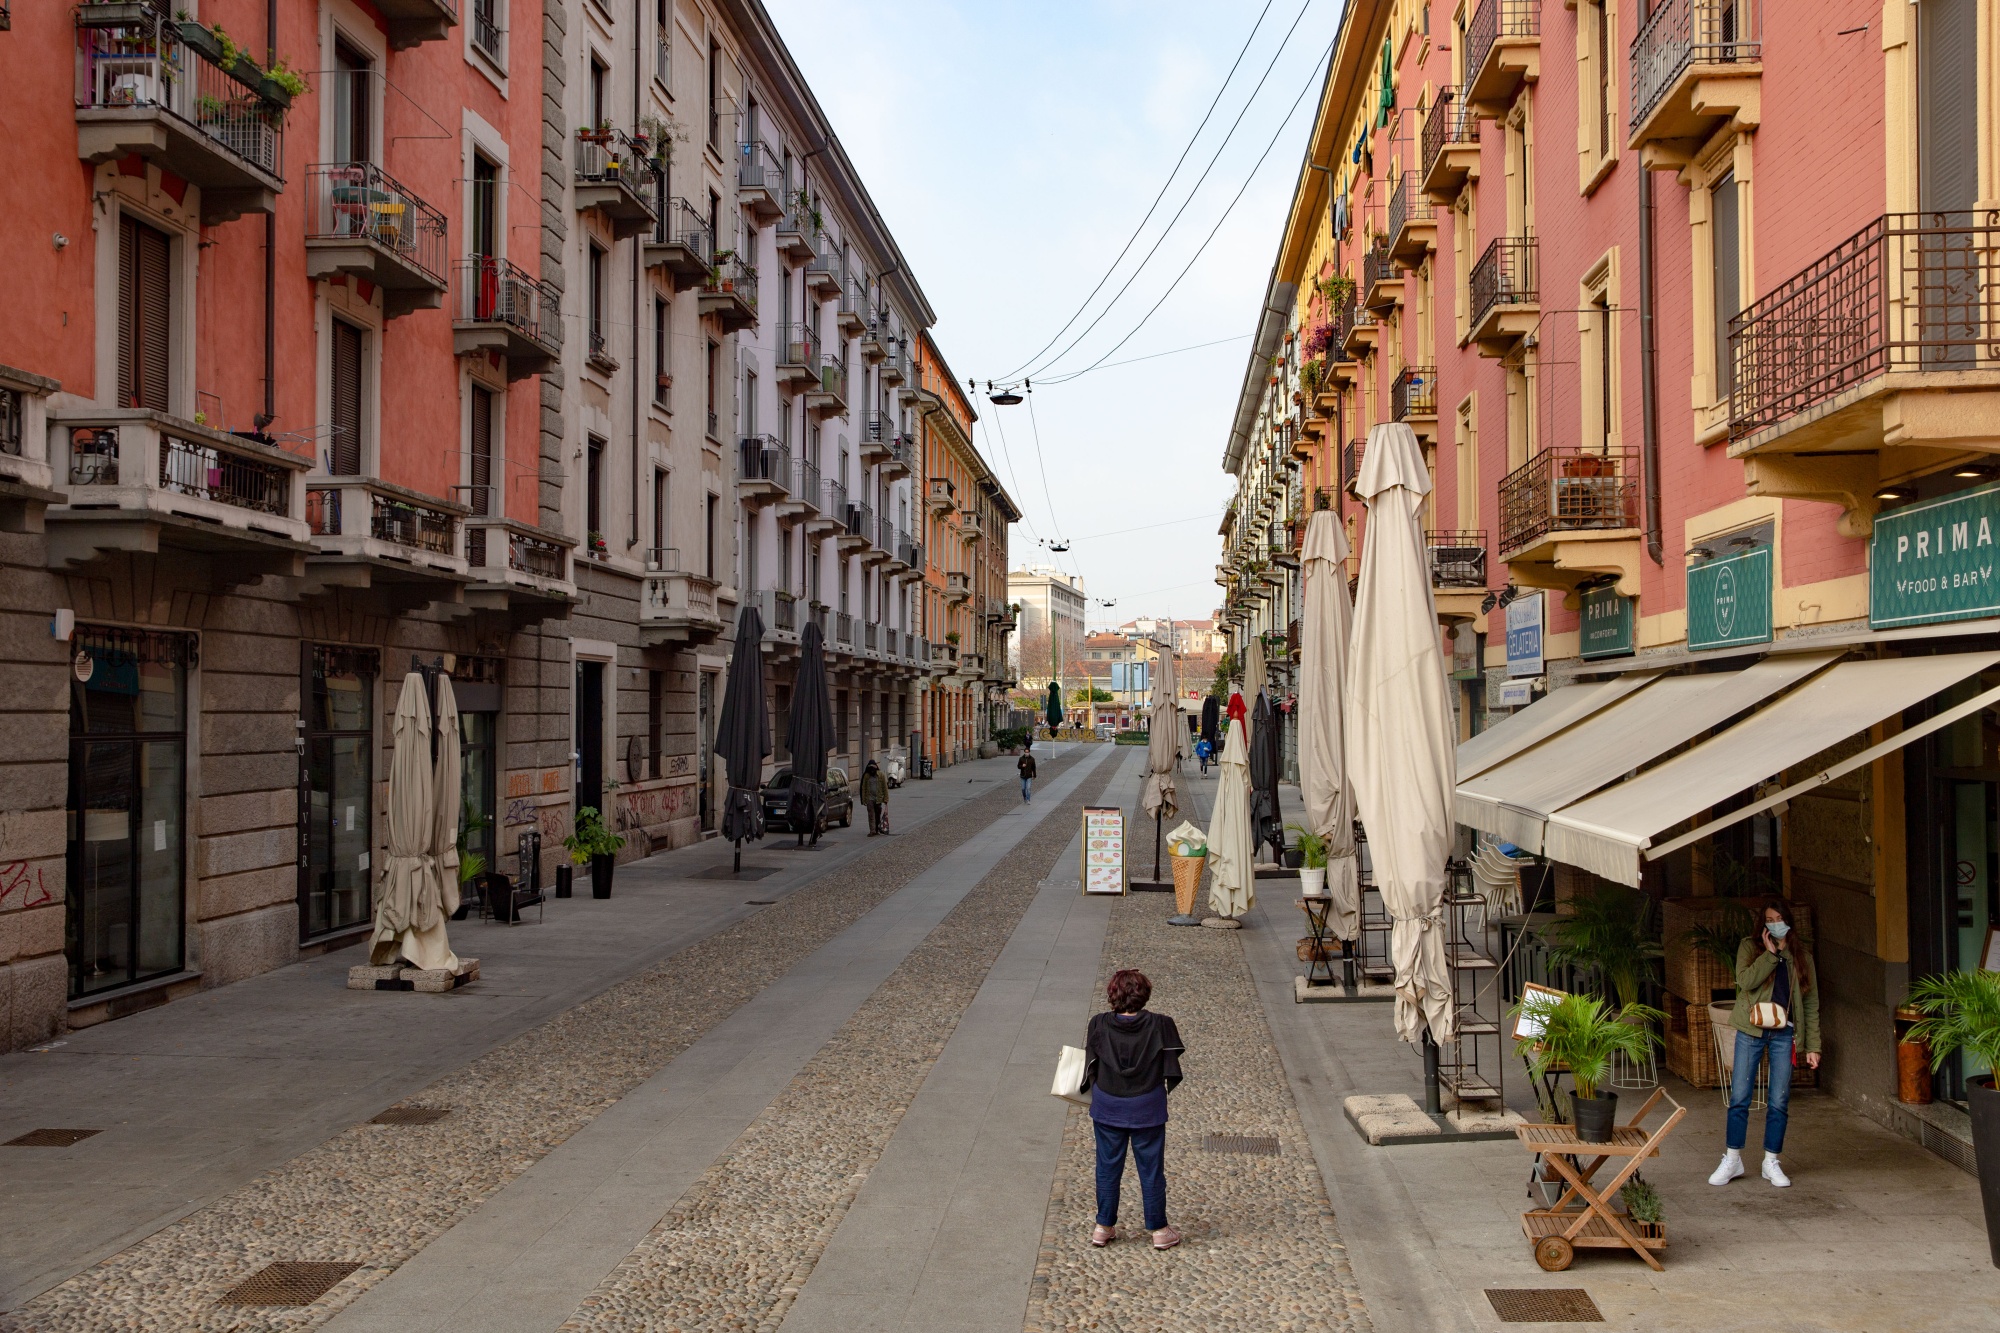 Quiet streets in the Navigli neighborhood of Milan.